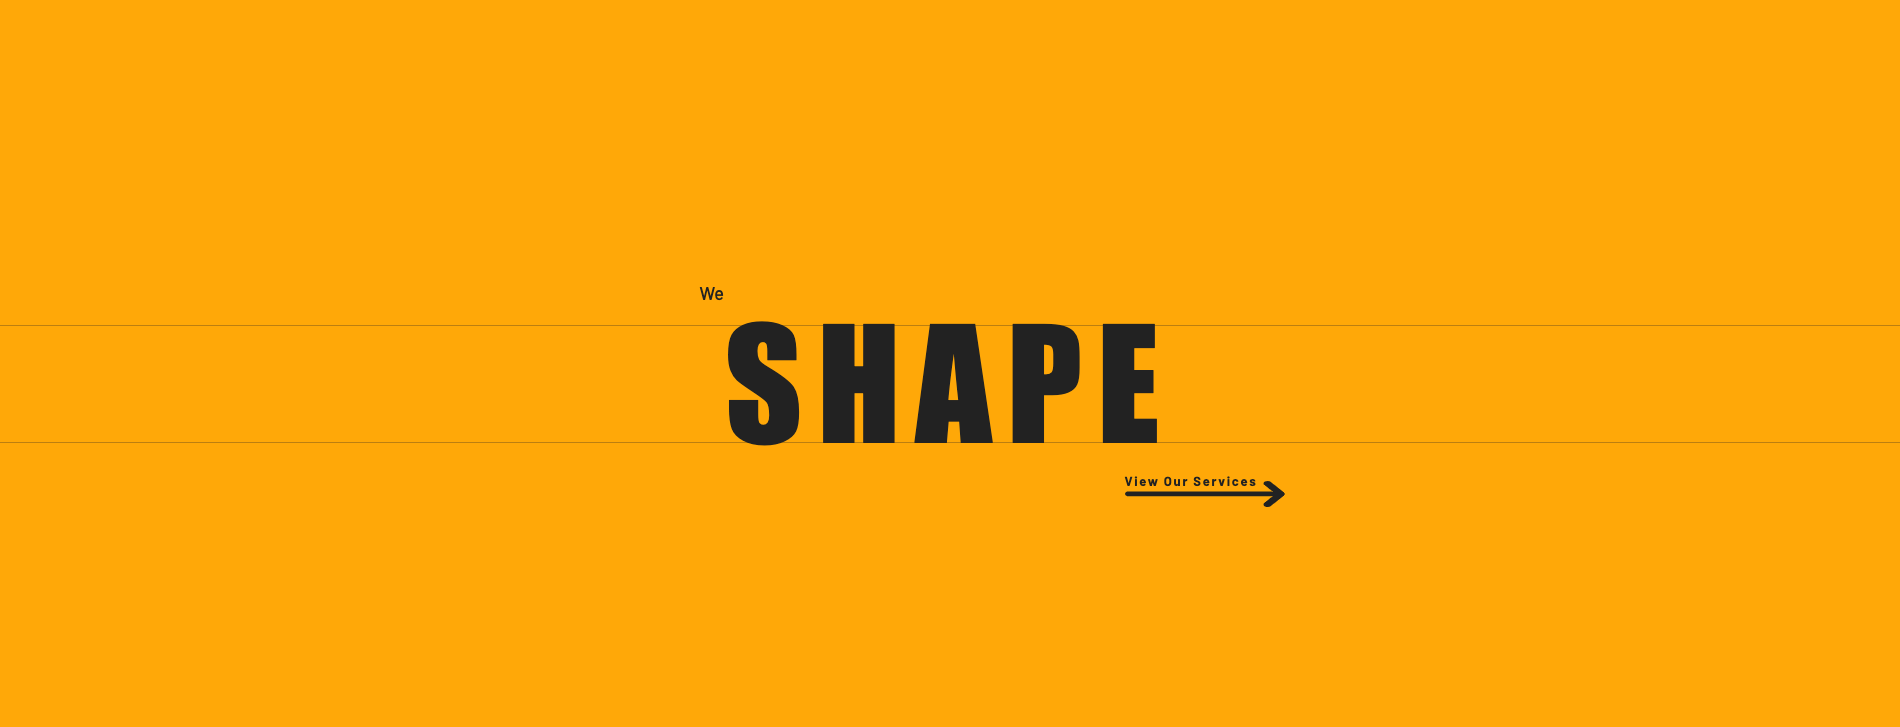 We shape